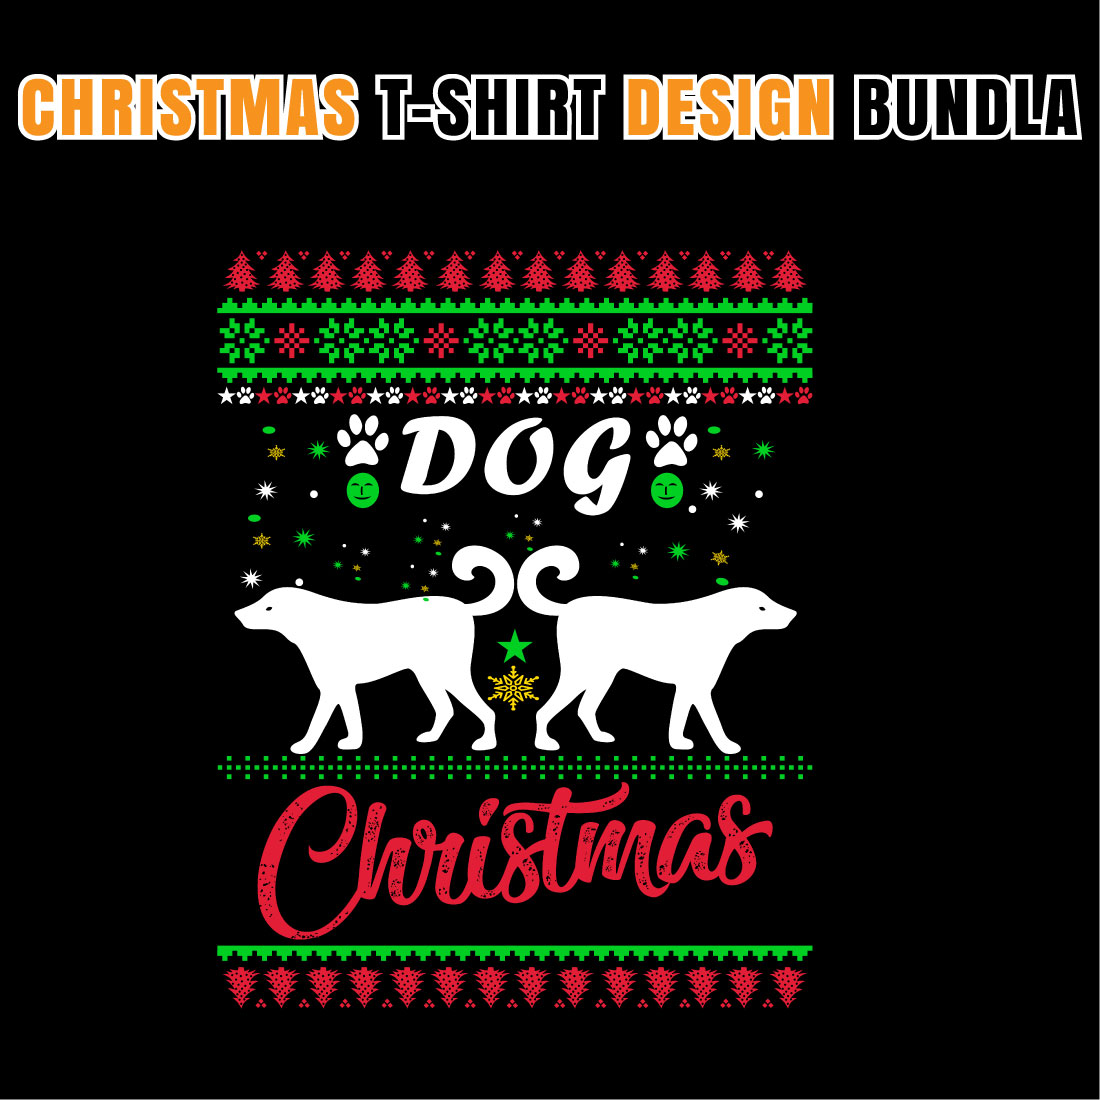 Christmas T-shirt Dog Designs Bundle V.1 facebook image.